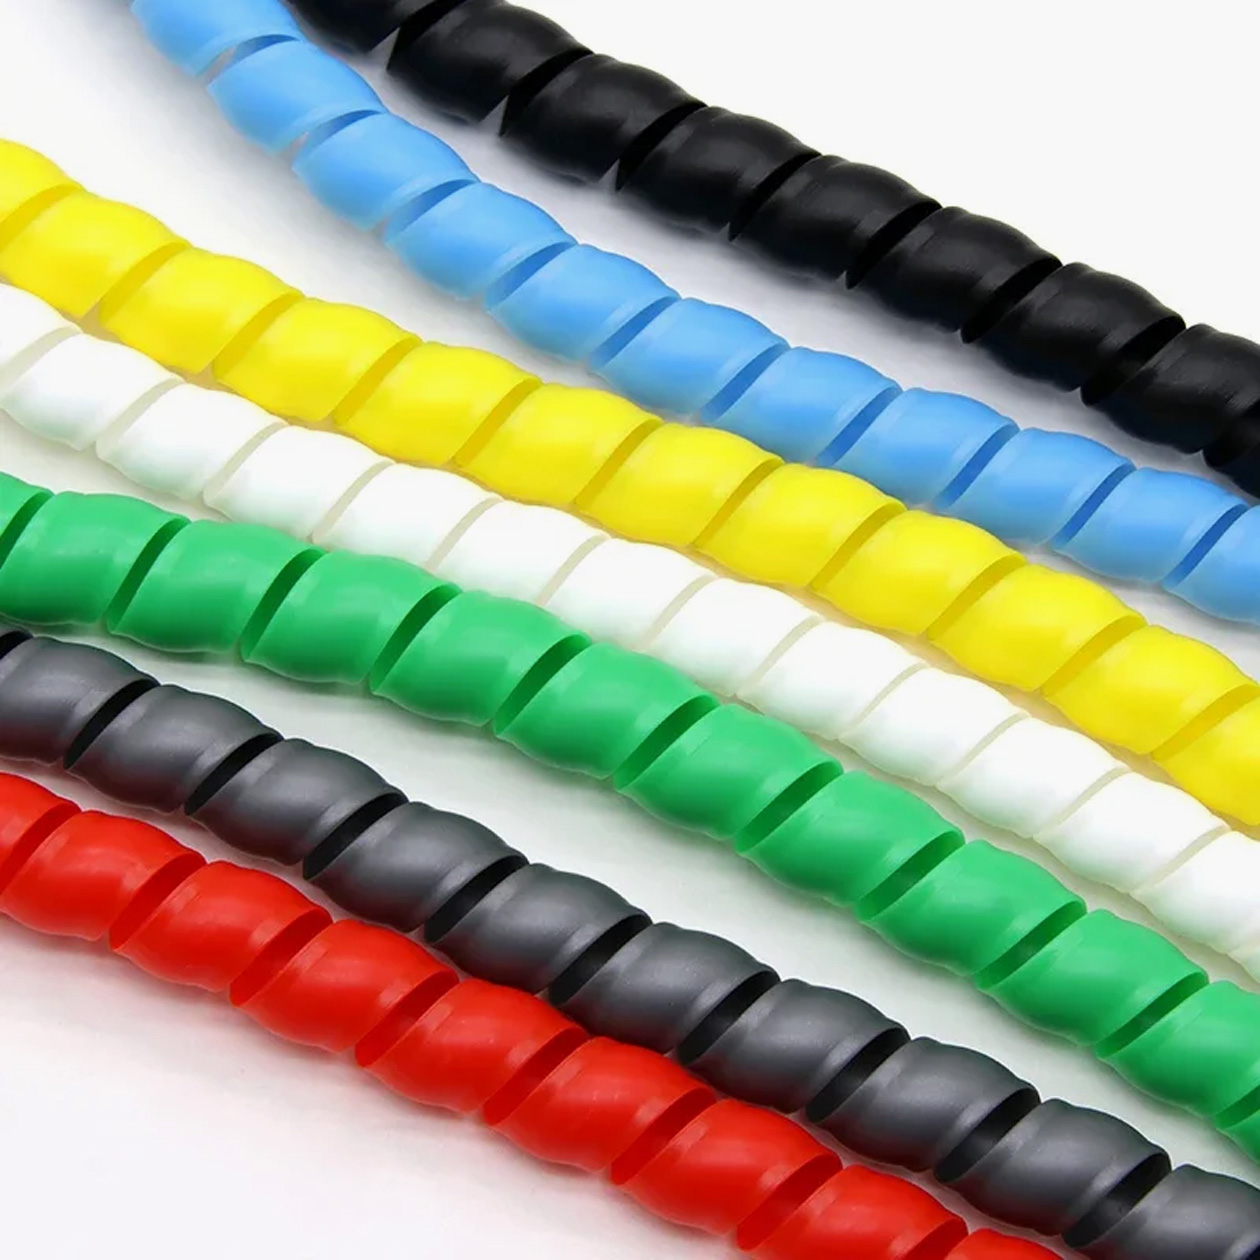 Разноцветная оплетка поможет не запутаться, какой кабель идет к вентиляторам, а какой — к кнопке включения корпуса. Источник: aliexpress.ru